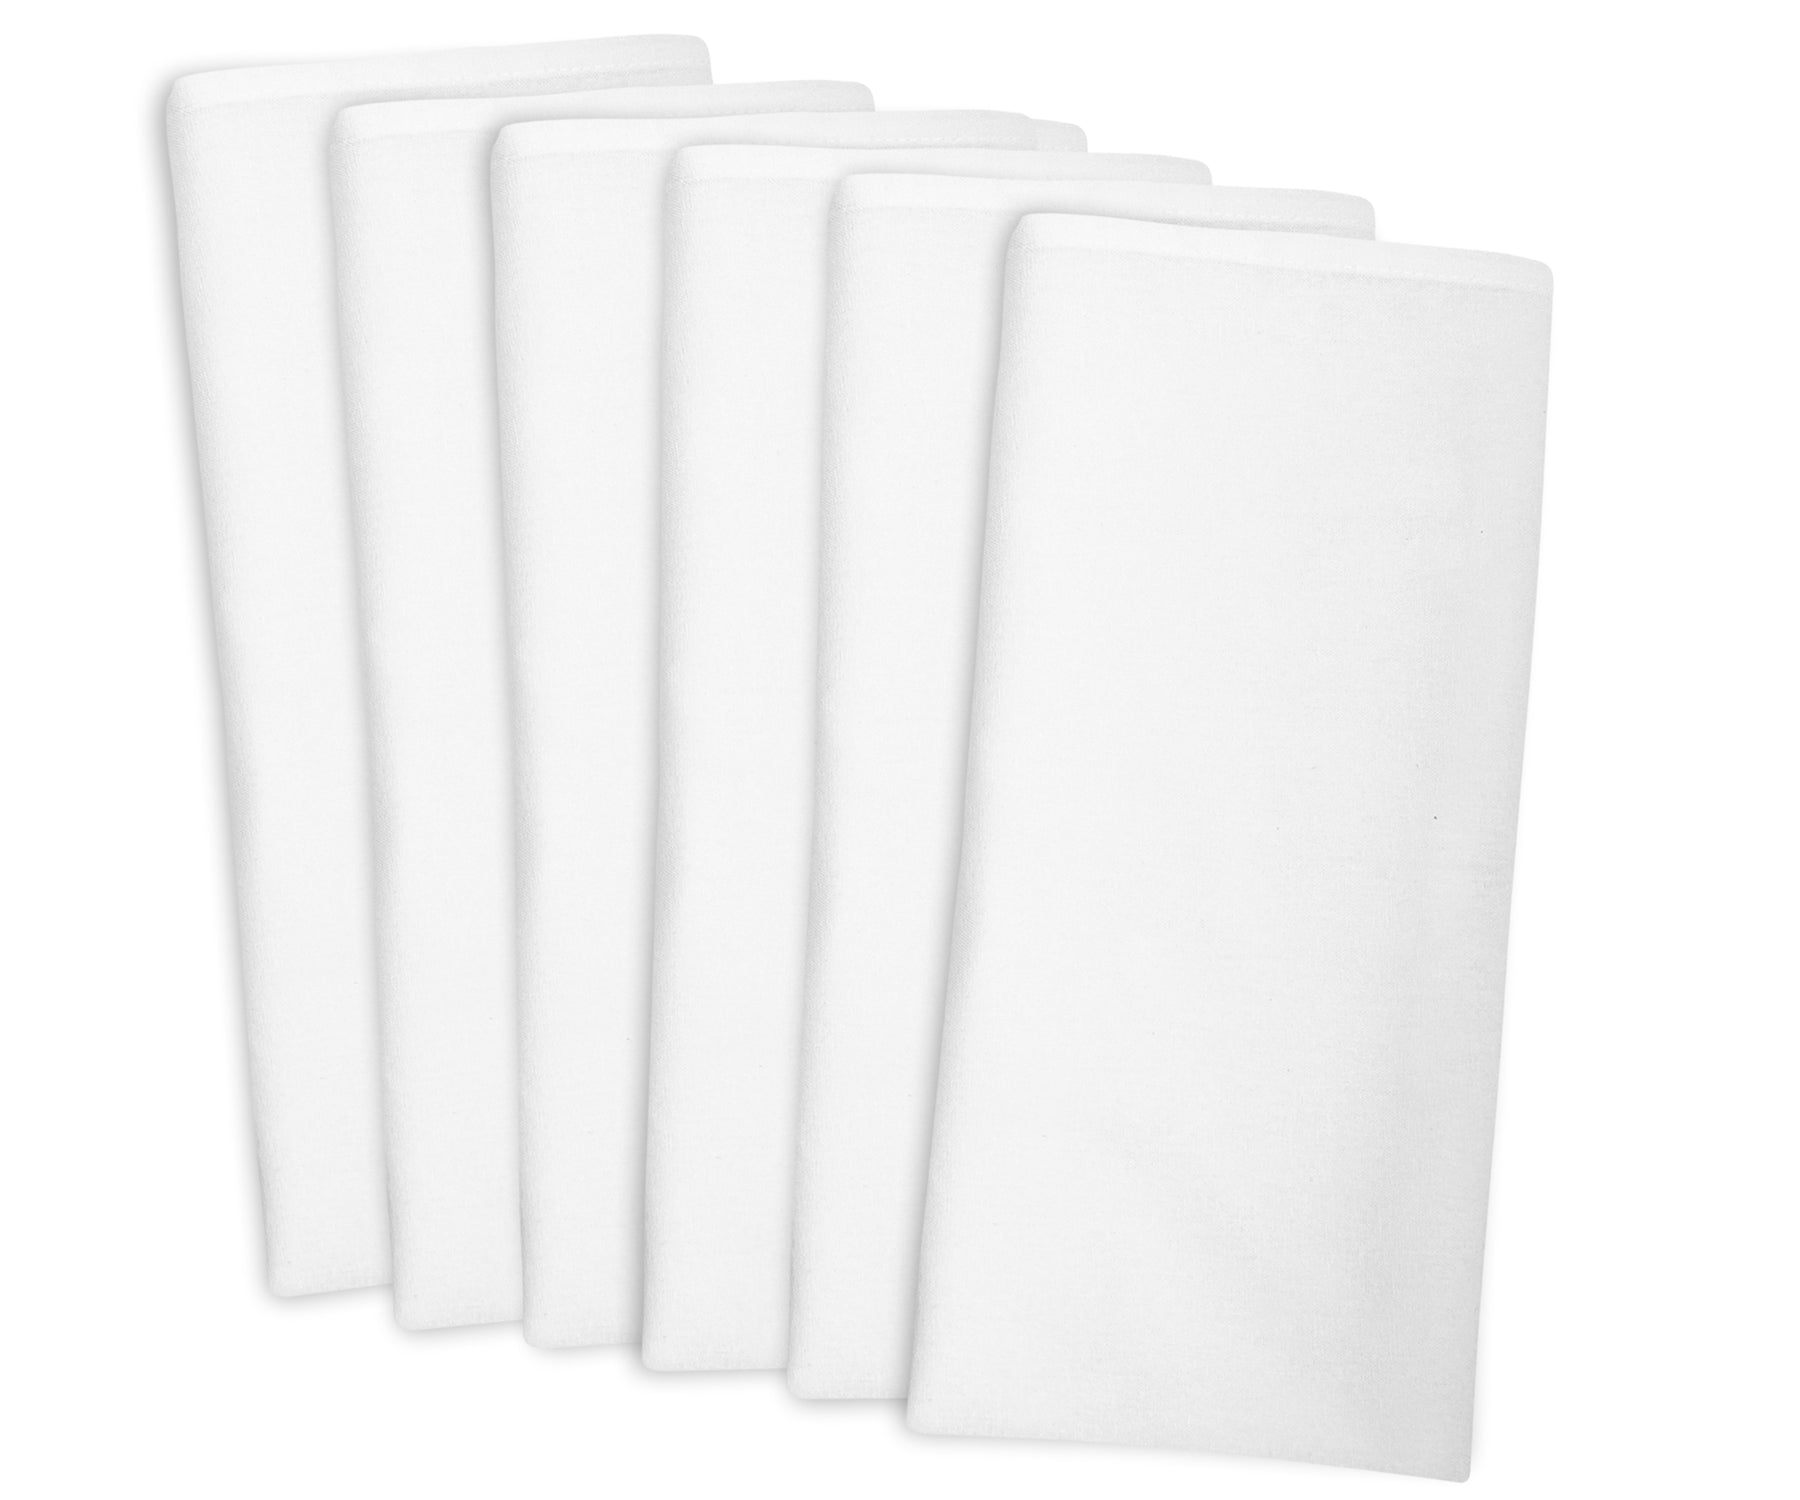 Flour Sack Dish Towels | Linen Dish Cloths | Flour Sack Towels | White Dish Towels Set of 6, 28 x 28